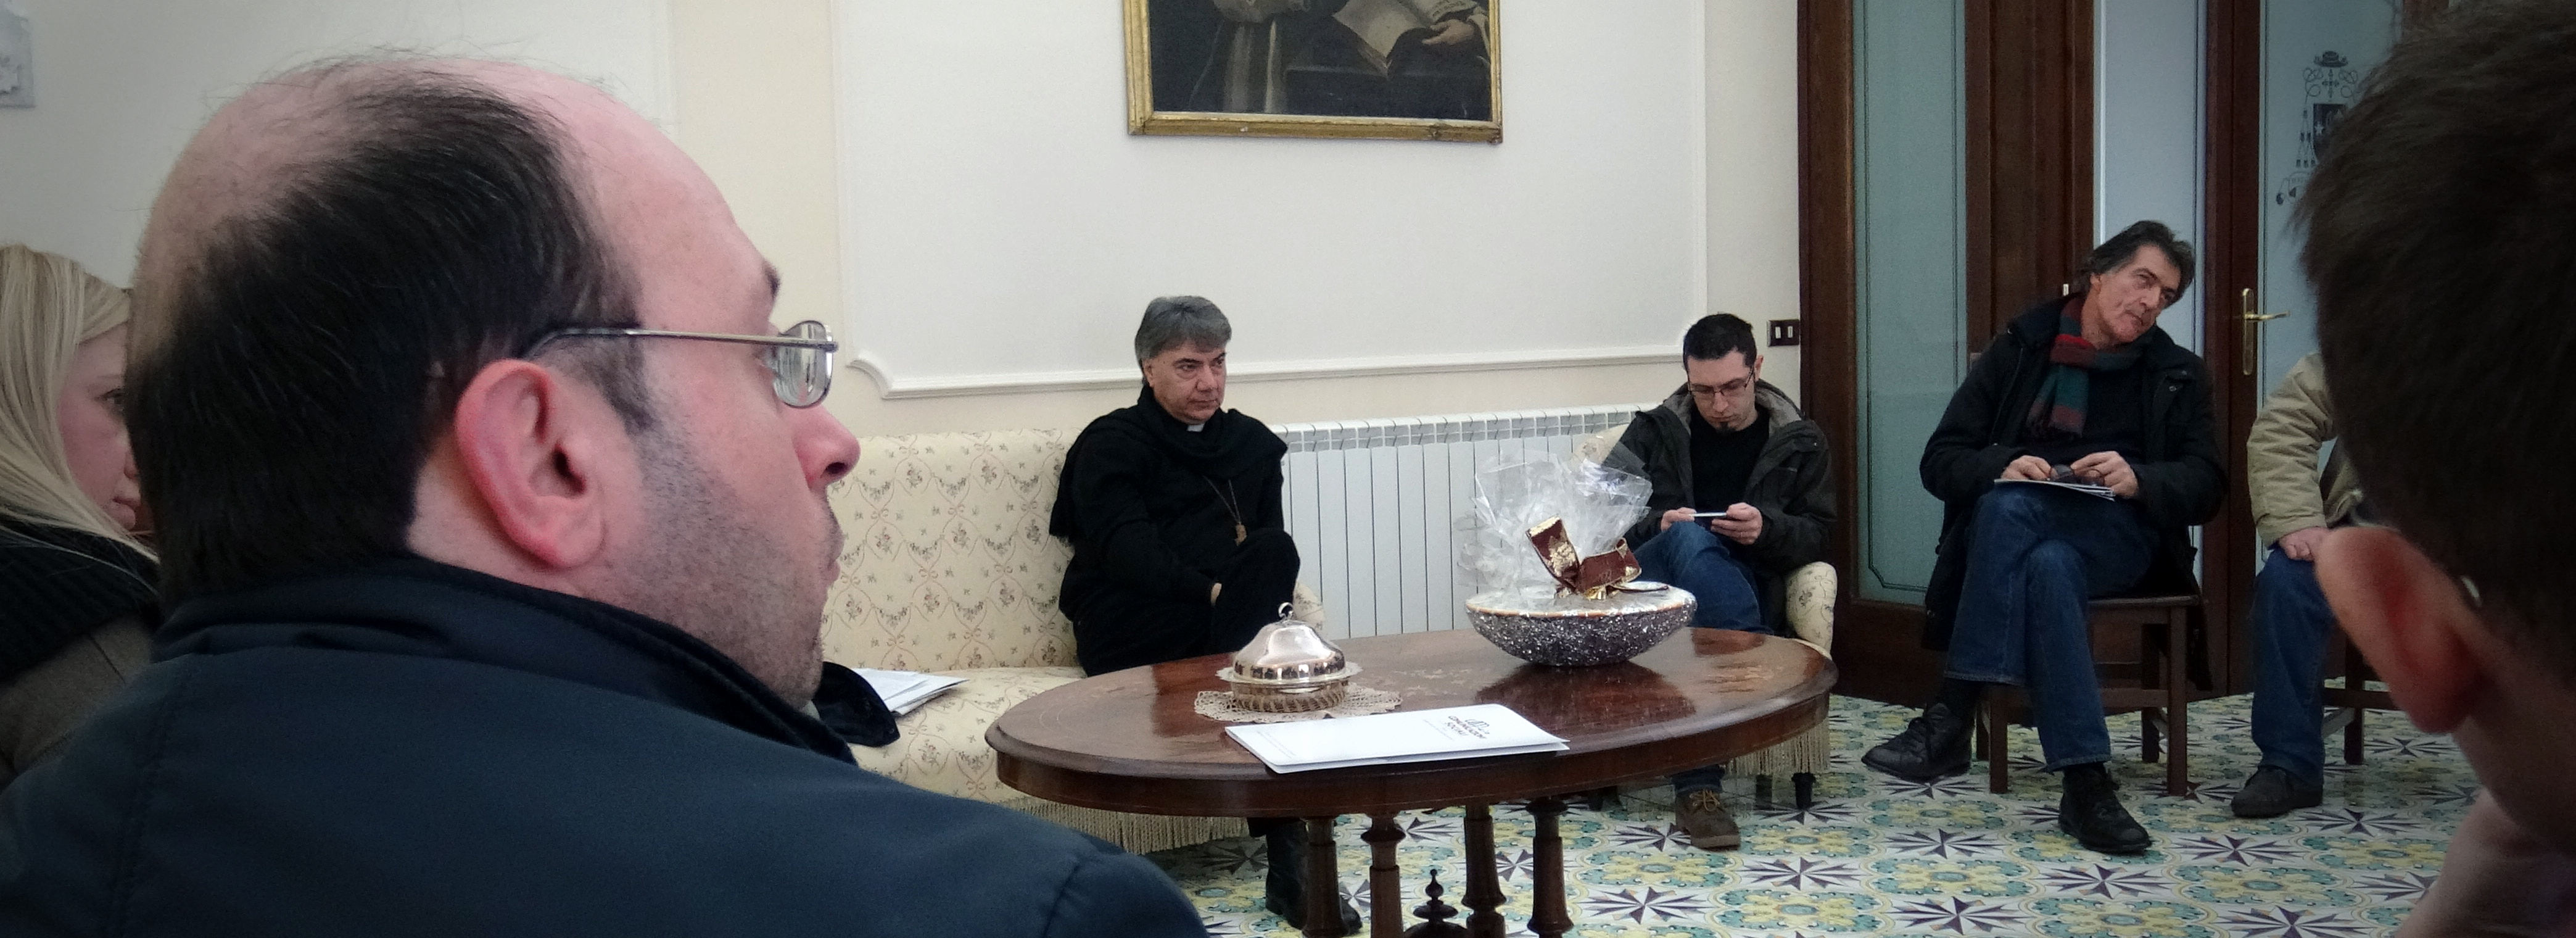 Cerreto Sannita| Il Vescovo Battaglia incontra i giornalisti: “Collaborazione con la Diocesi”